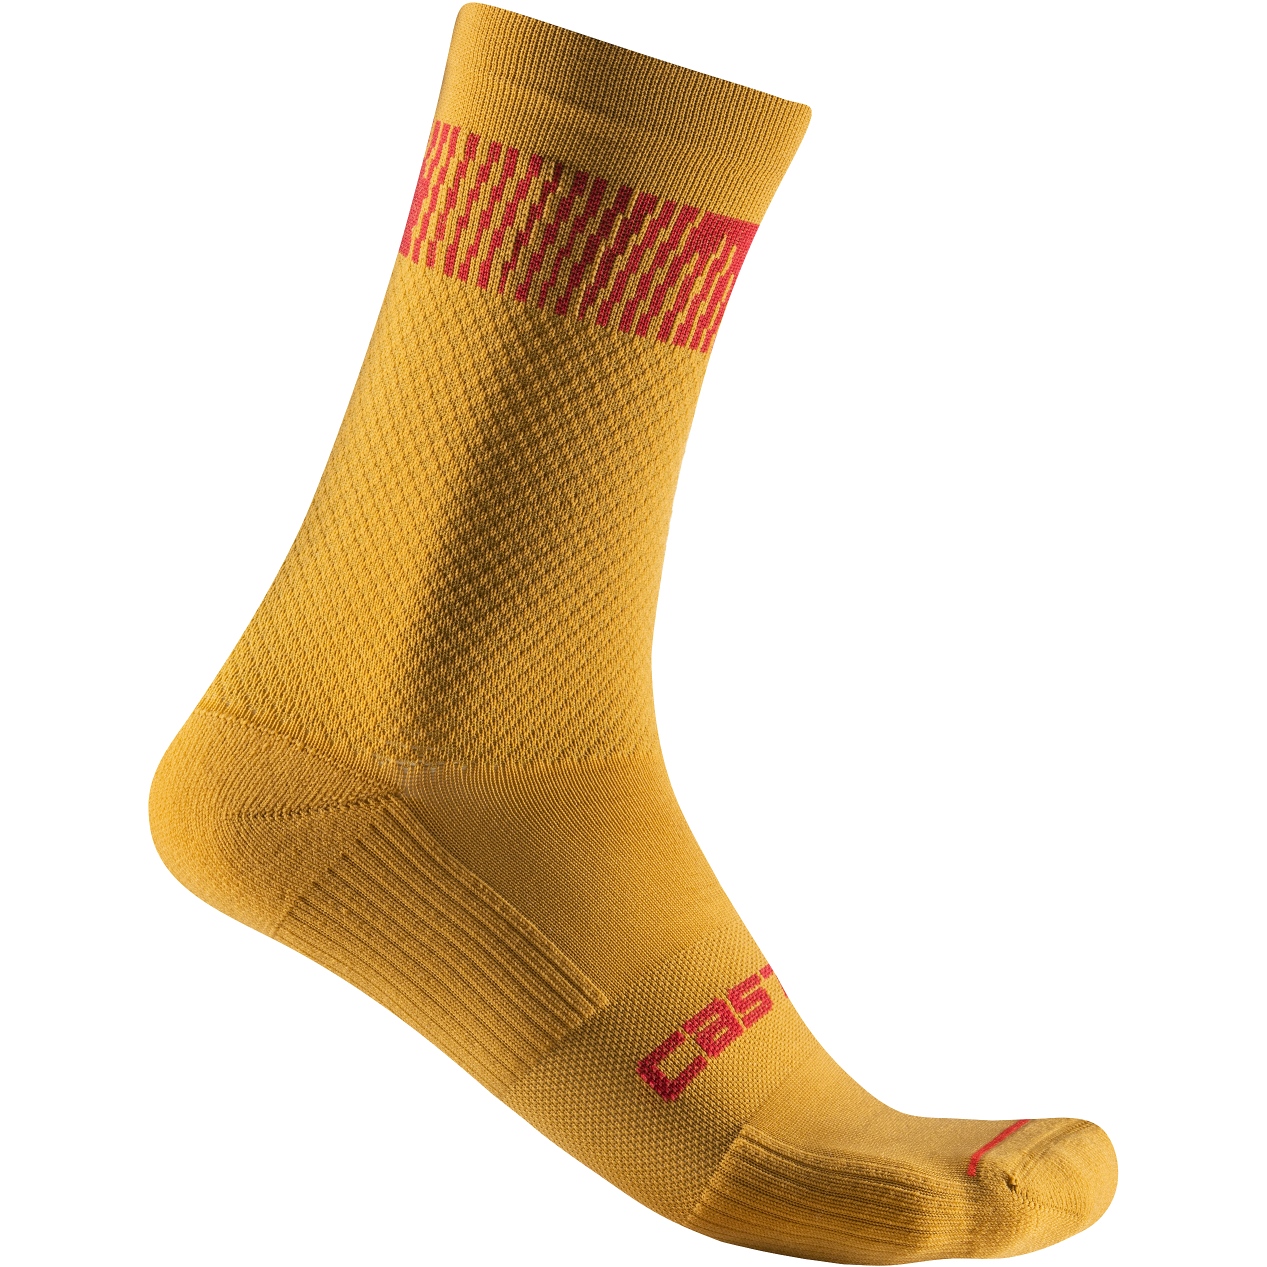 Bild von Castelli Unlimited 18 Socken - goldenrod/rich red 755